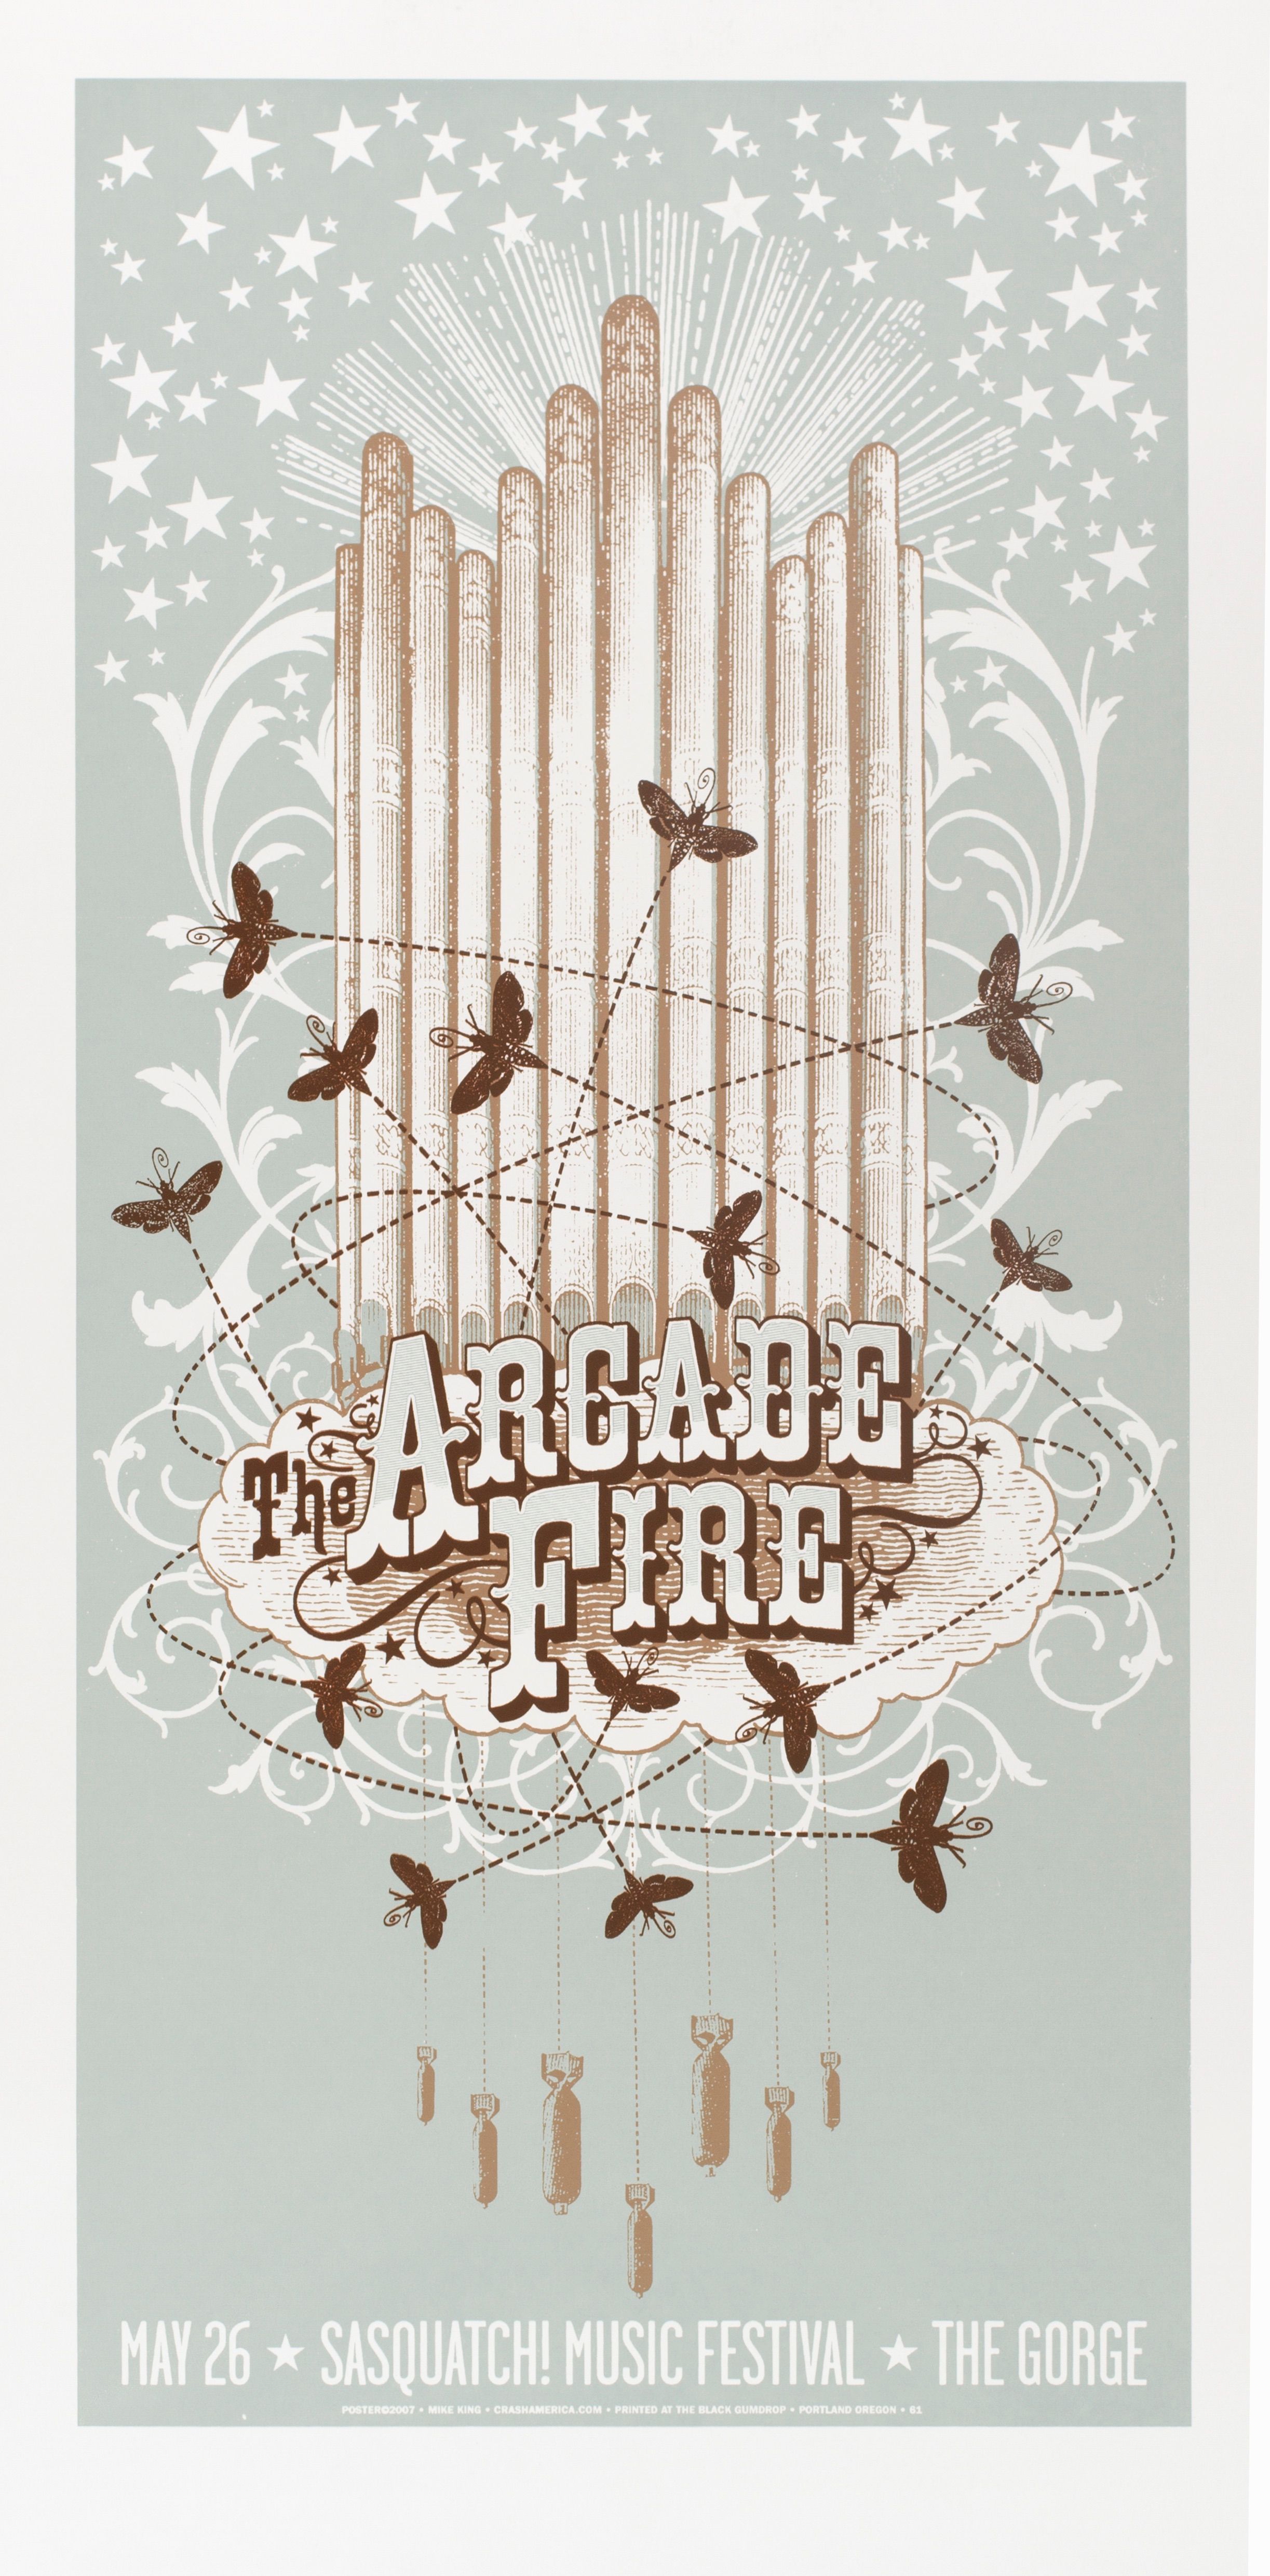 MXP-248.2 Arcade Fire 2003 Gorge  Apr 28 Concert Poster